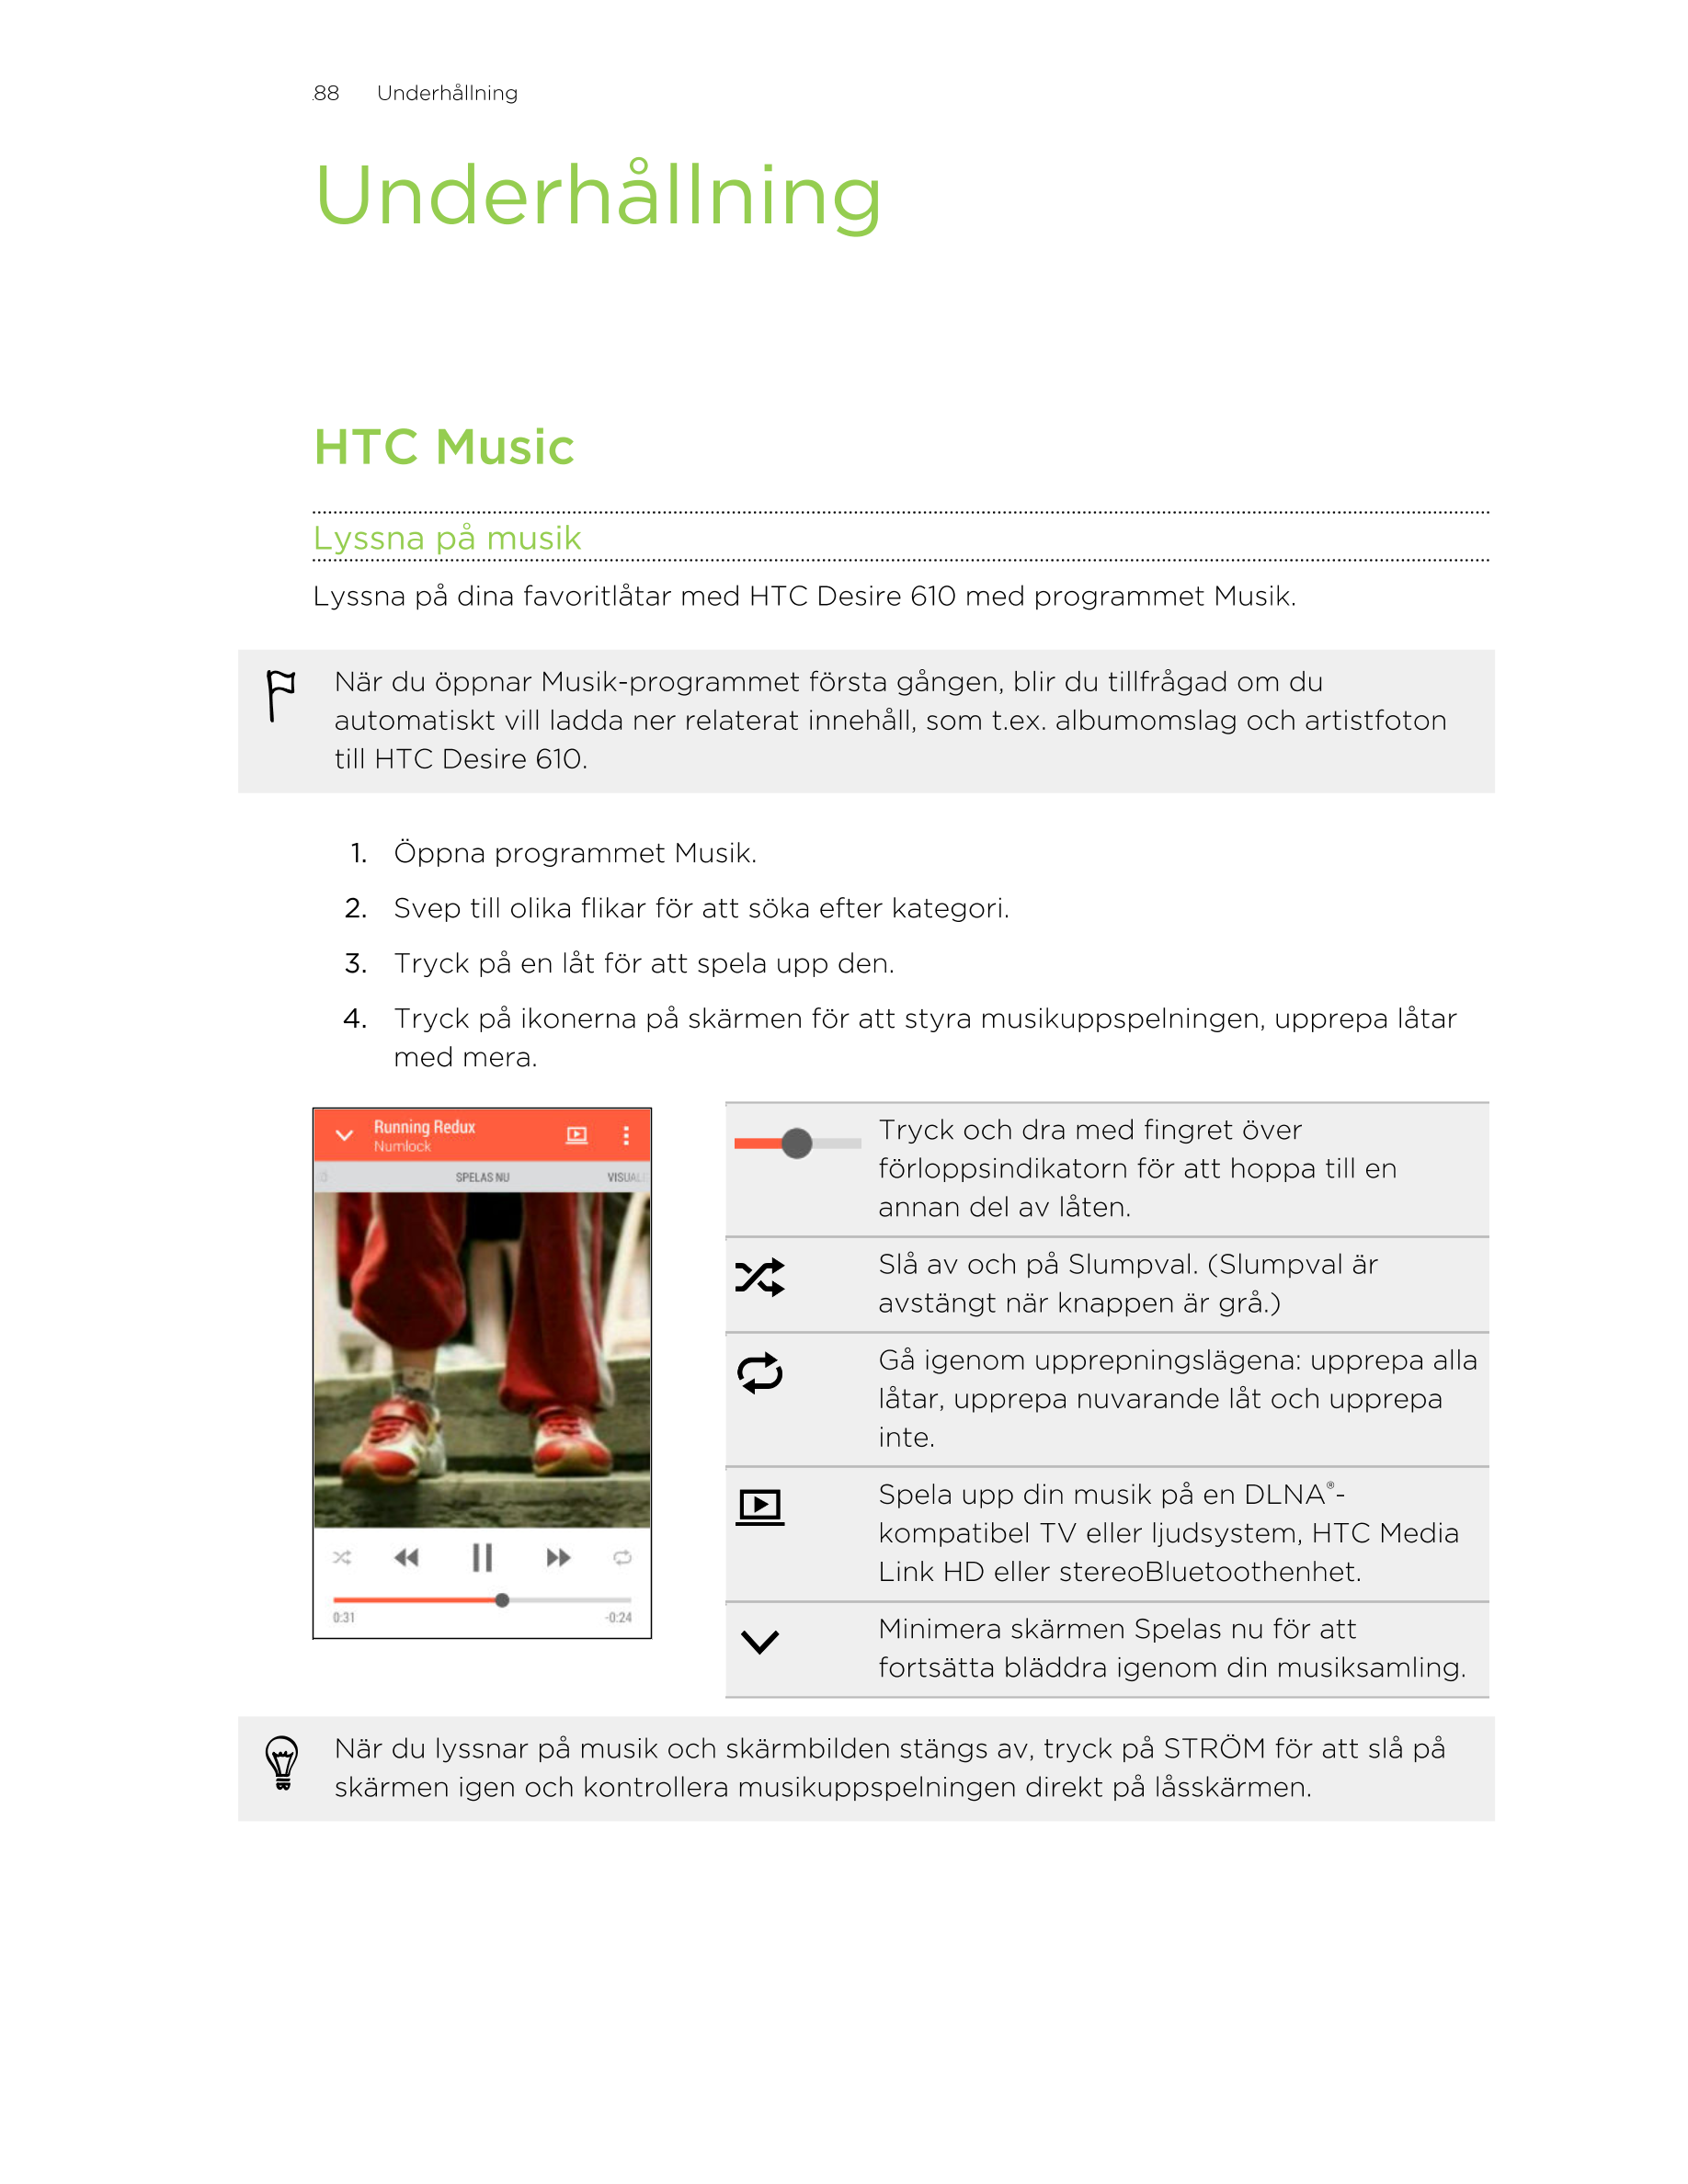 88     Underhållning
Underhållning
HTC Music
Lyssna på musik
Lyssna på dina favoritlåtar med HTC Desire 610 med programmet Musik